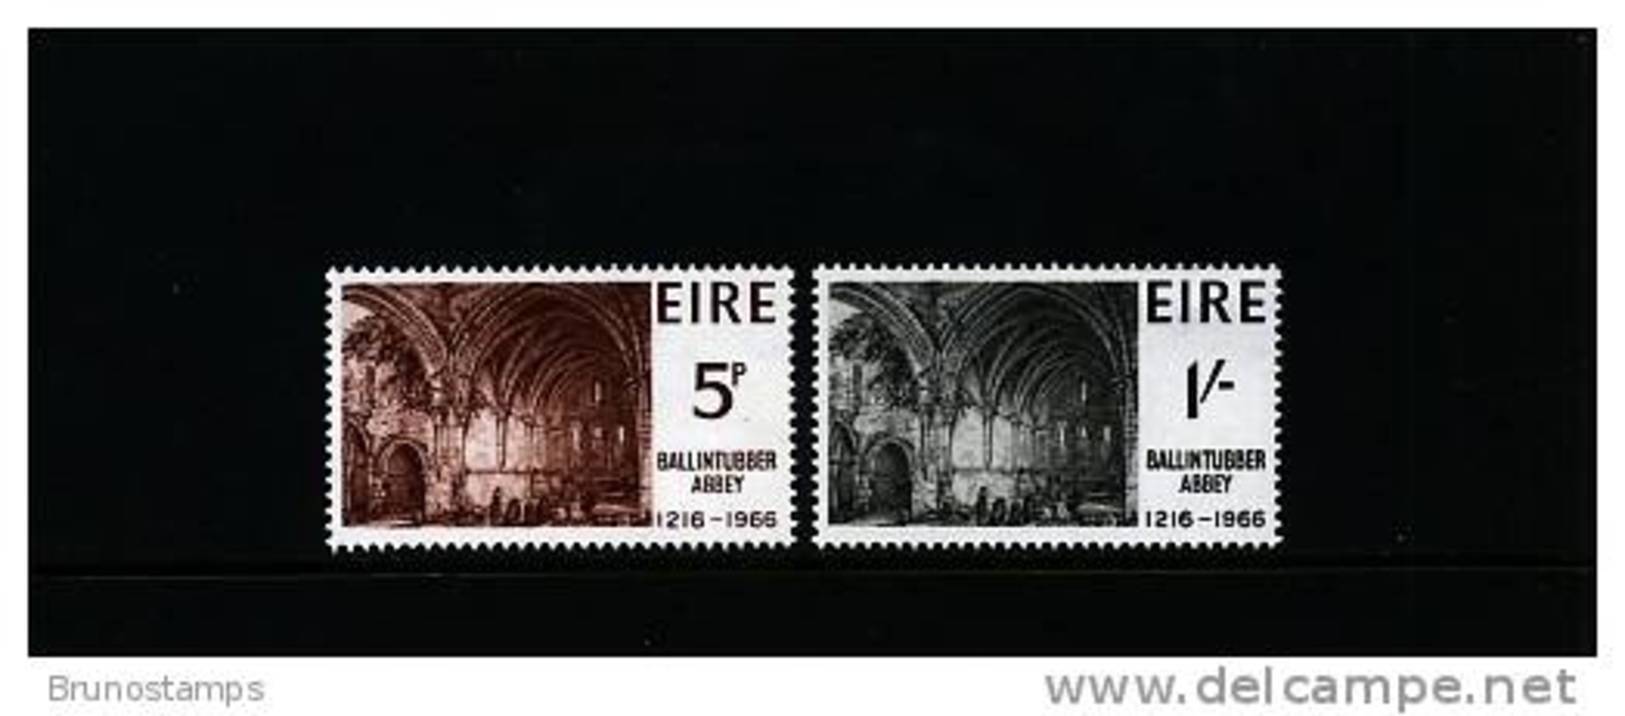 IRELAND/EIRE - 1966 BALLINTUBBER ABBEY  SET MINT NH - Nuovi